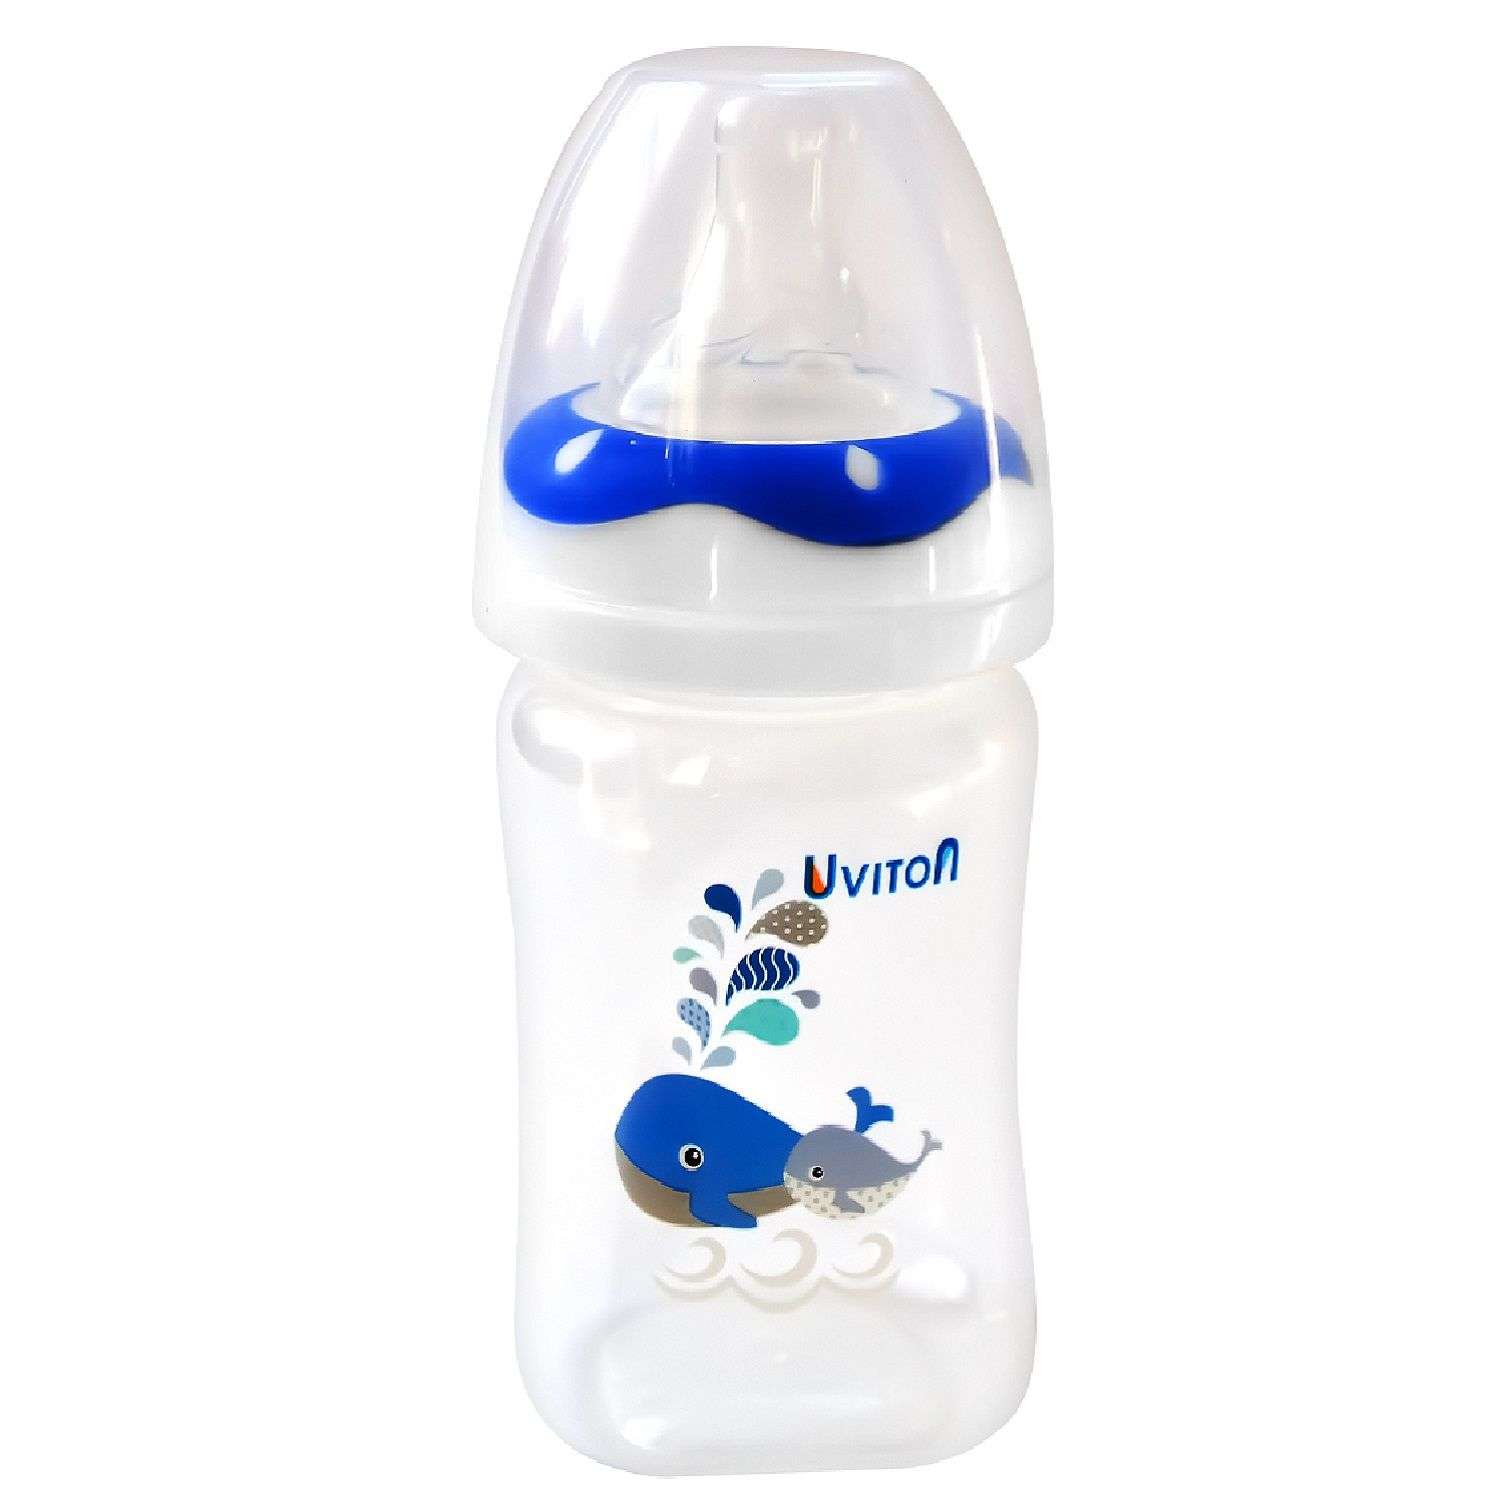 Бутылочка Uviton широкое горлышко 150 мл Синяя 0086 - фото 1